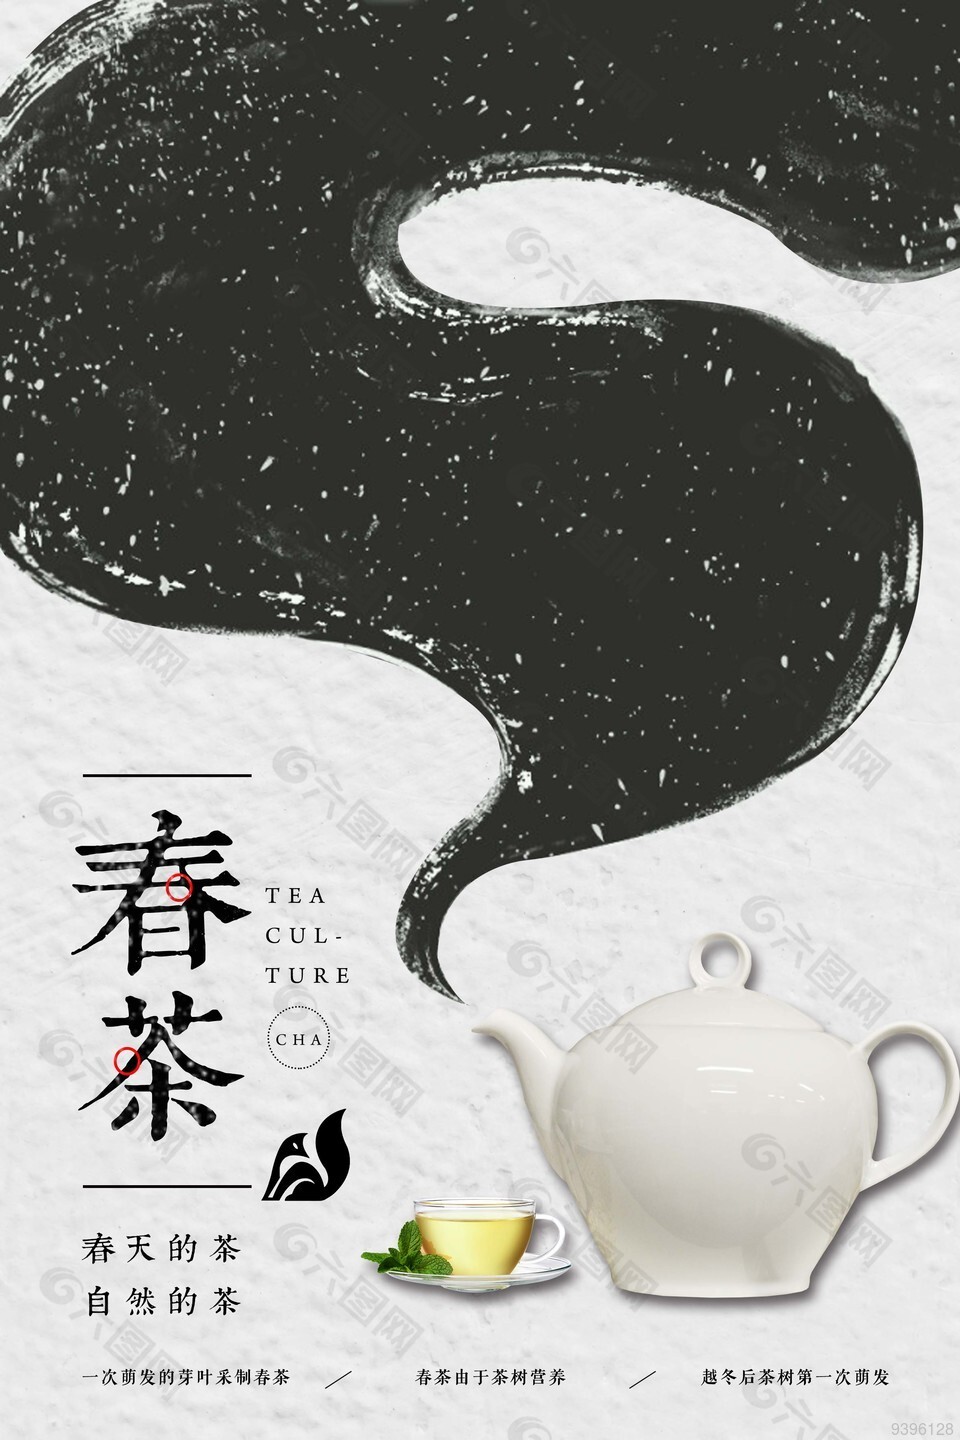 创意黑白简约春茶宣传海报下载